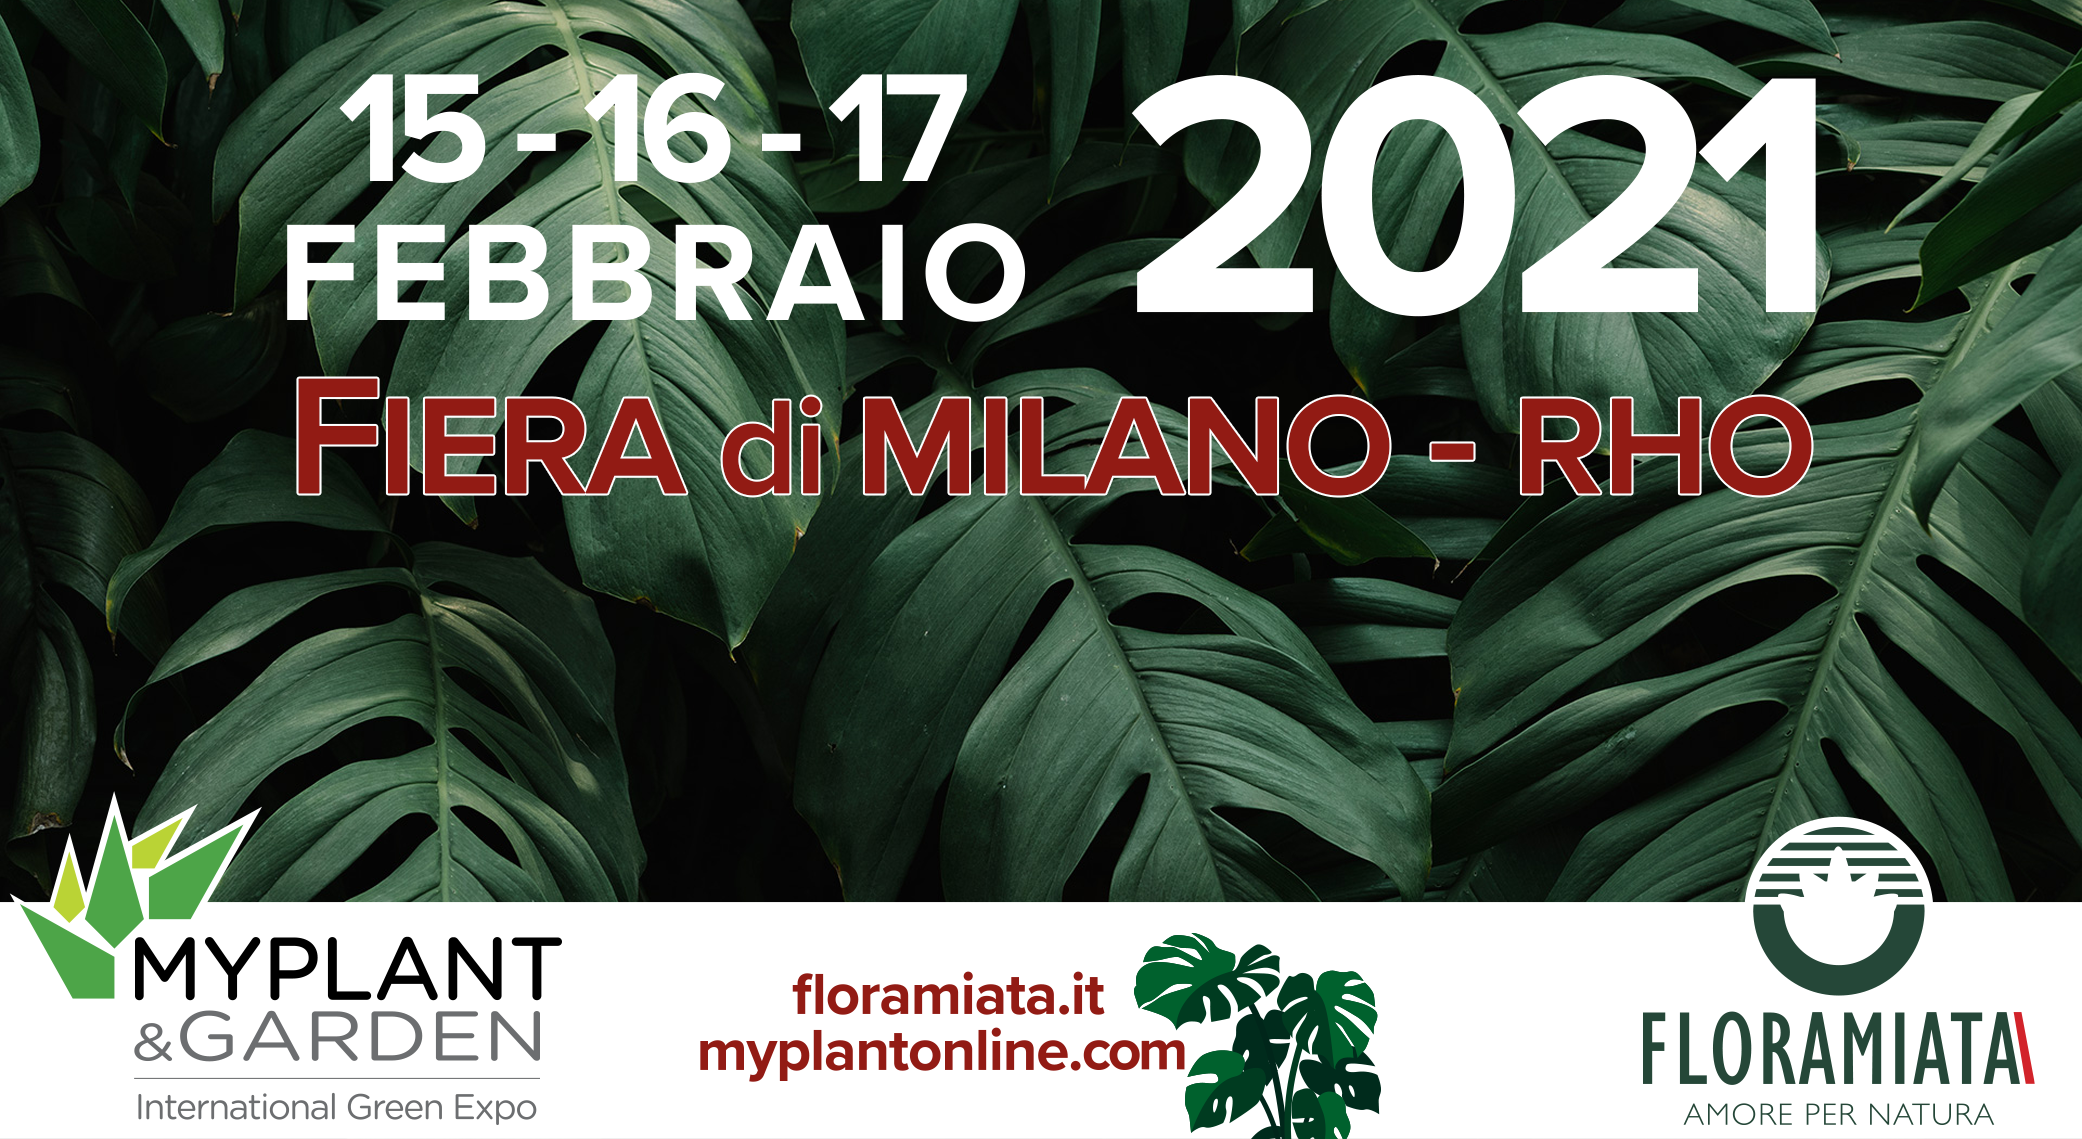 Vi aspettiamo al Myplant & Garden presso la Fiera Milano dal 15 al 17 febbraio 2021